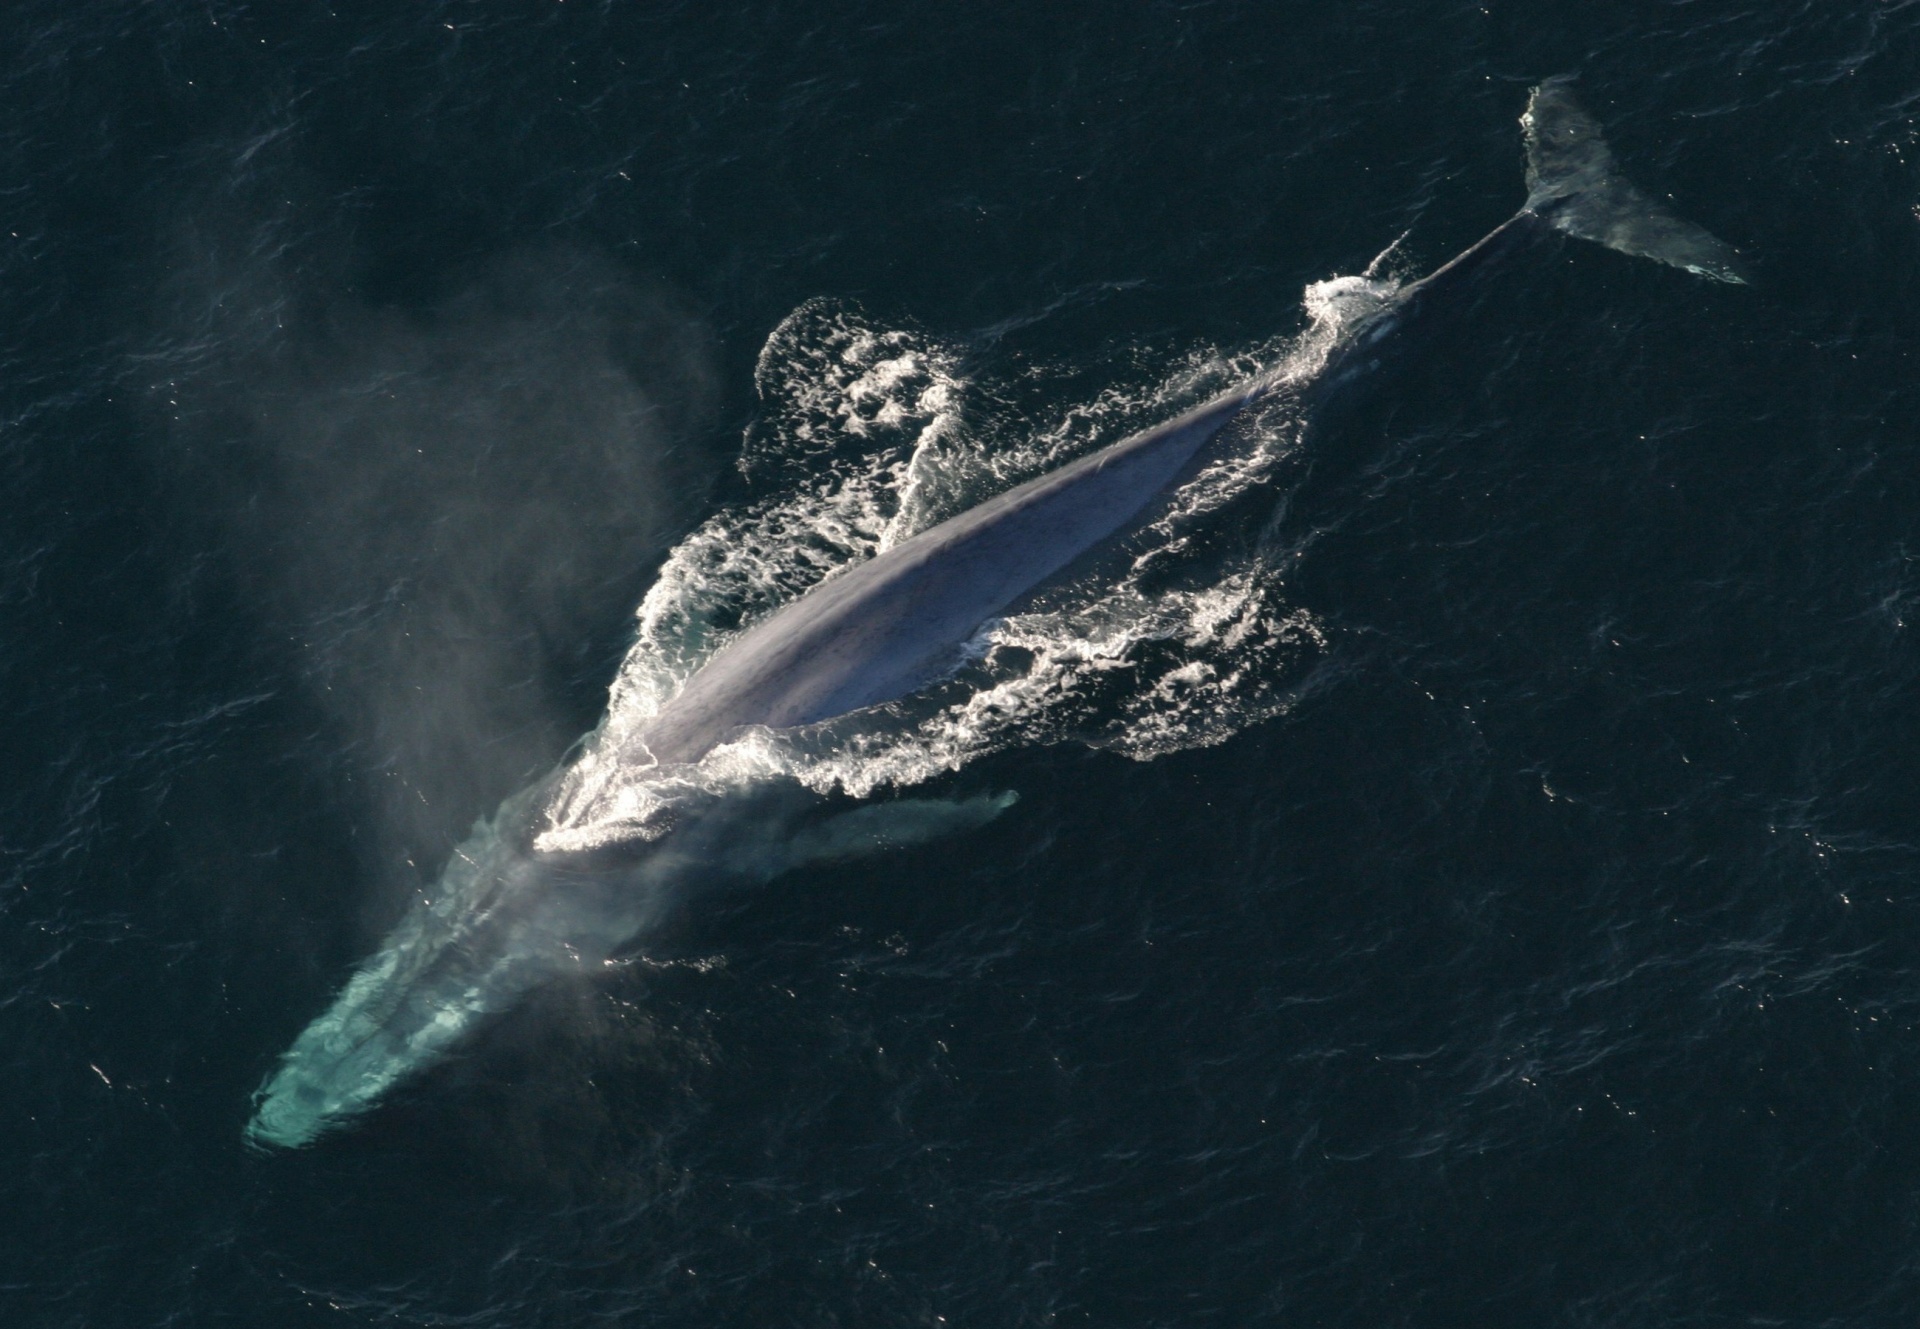 La baleine bleue a failli disparaître et a été protégée dès 1966 quand les captures ont chuté drastiquement. Mais le plus grand animal de la Terre avait déjà rapetissé. © CC0 Public Domain